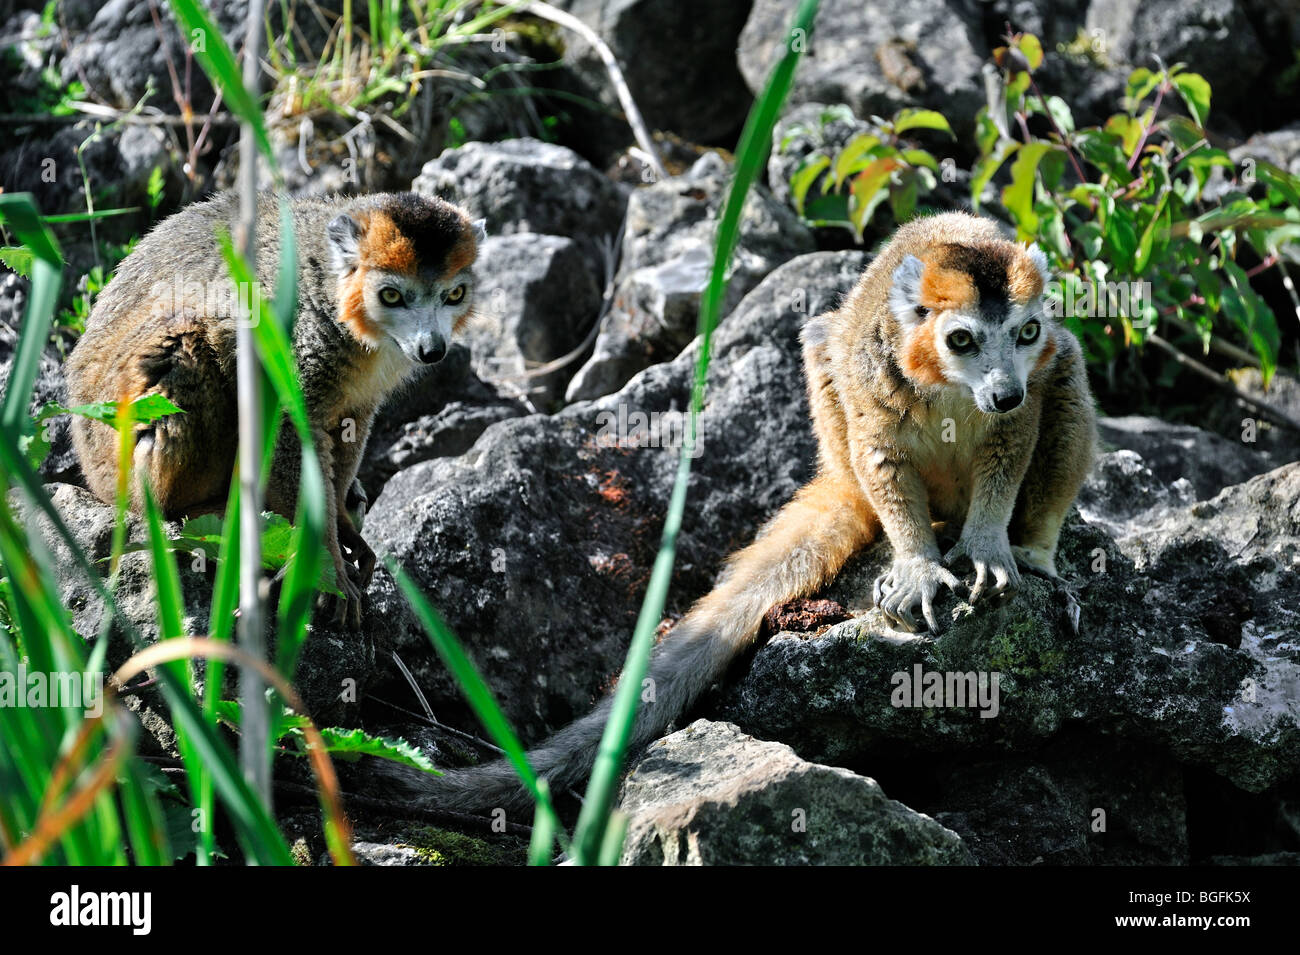 Crowned lemurs (Eulemur coronatus) native to Madagascar Stock Photo